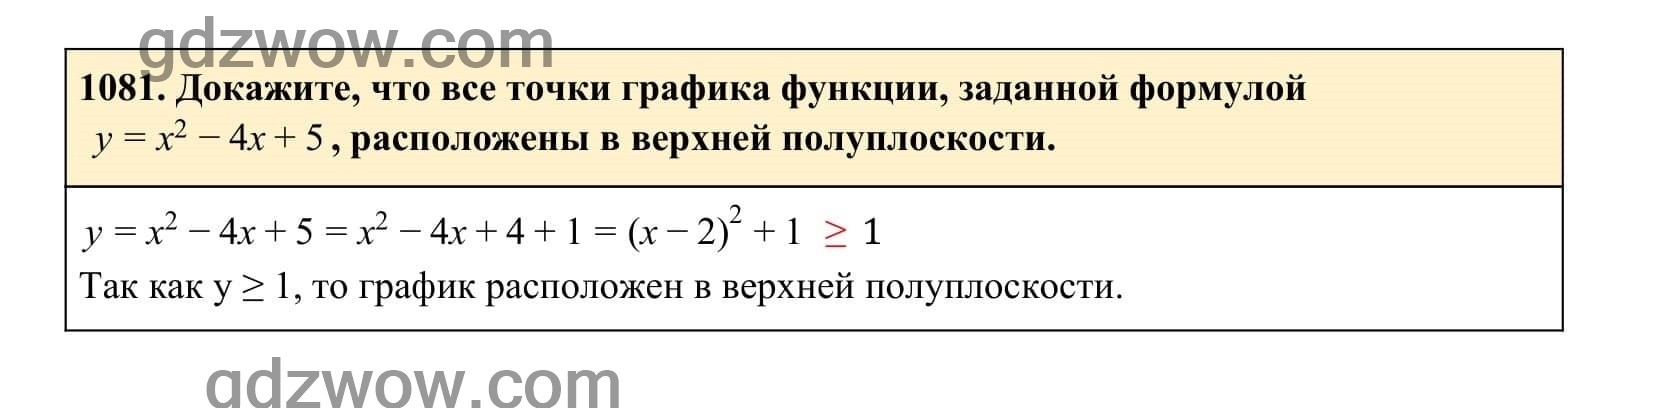 Упражнение 1081 - ГДЗ по Алгебре 7 класс Учебник Макарычев (решебник) - GDZwow